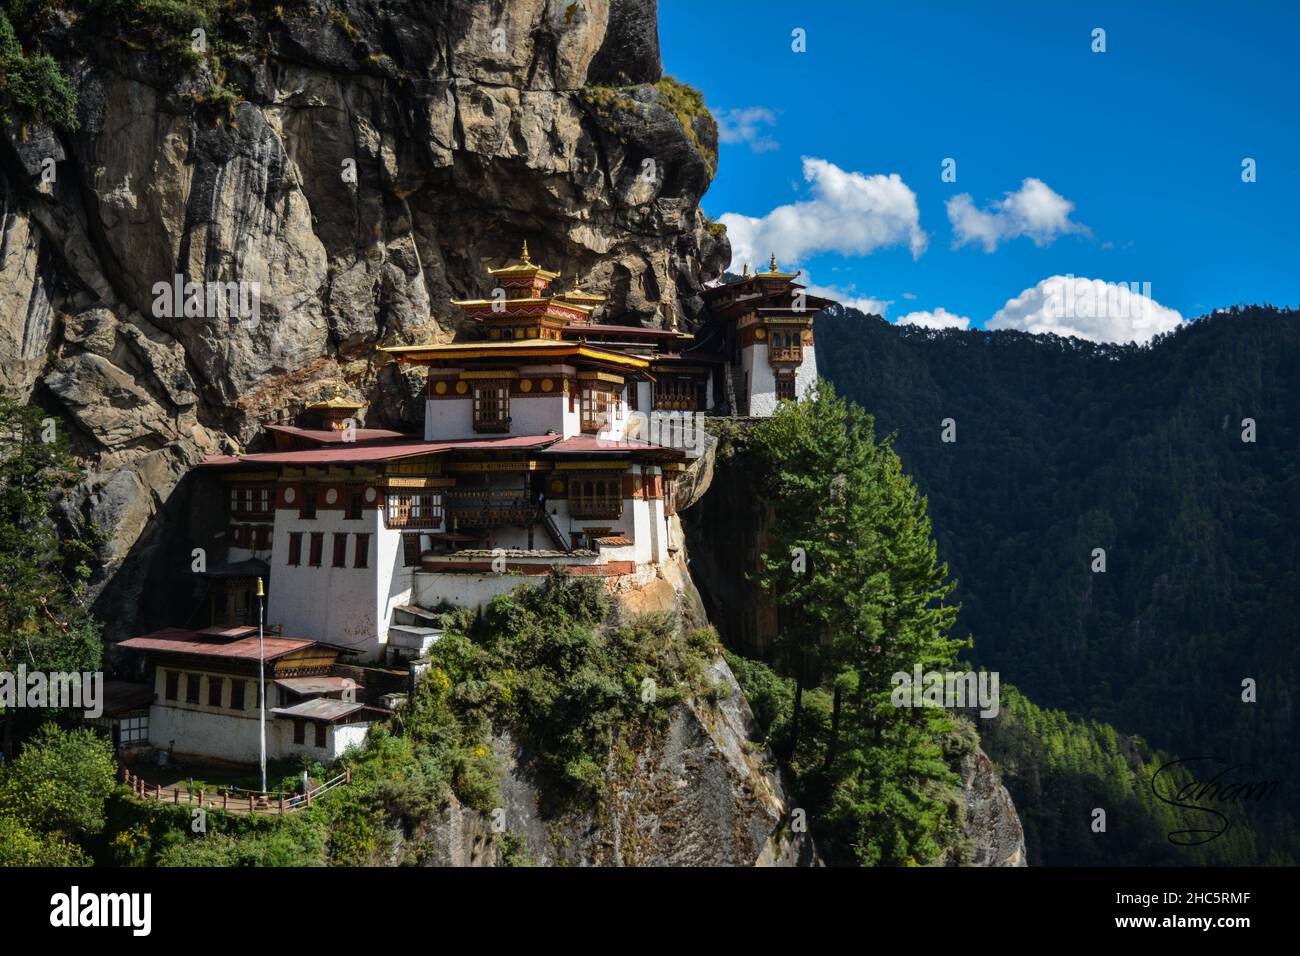 Luftaufnahme des wunderschönen Taksang Palphug-Klosters in Paro, Bhutan, umgeben von viel Grün Stockfoto